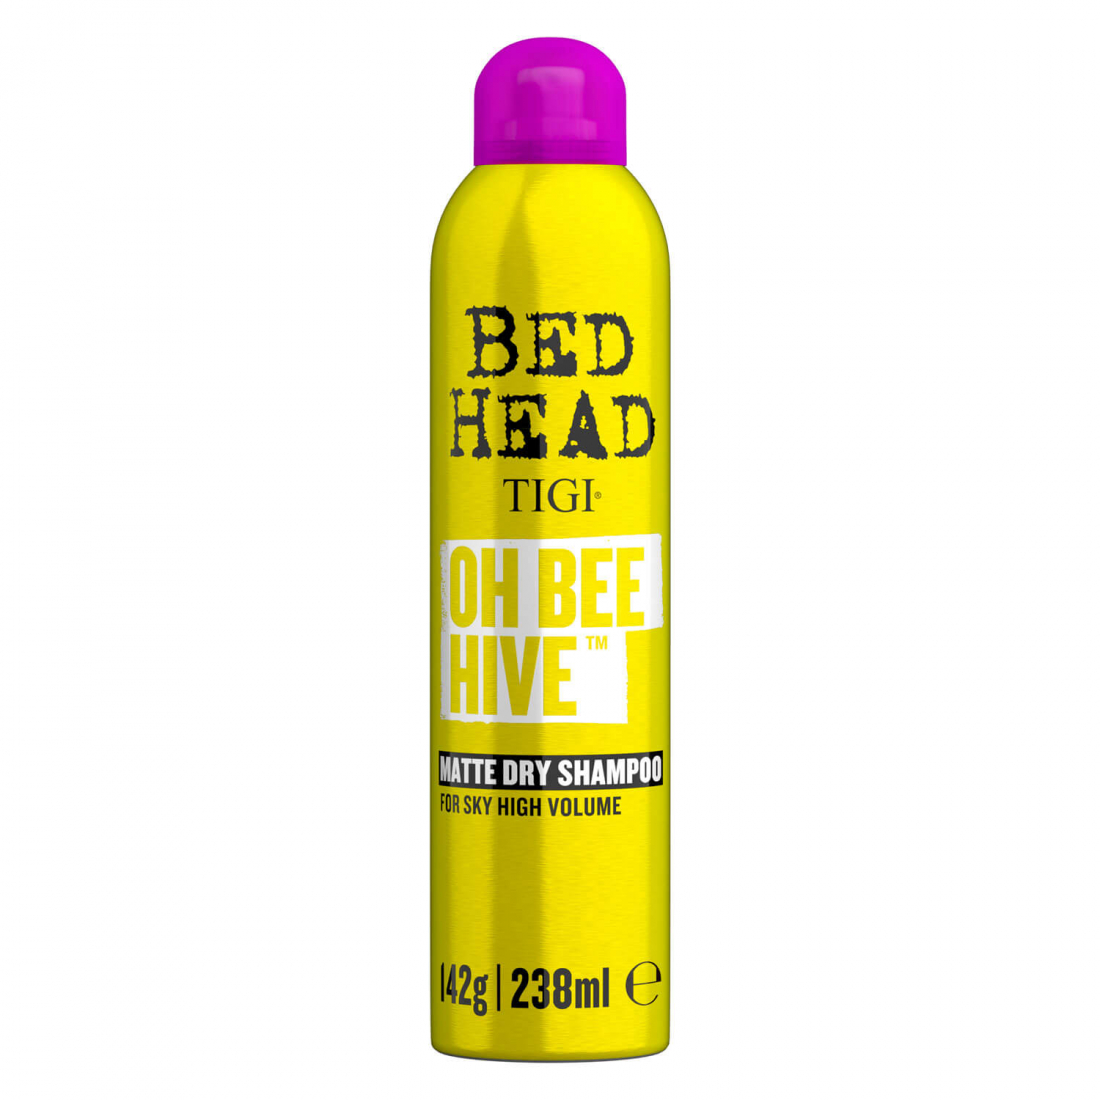 'Bed Head Oh Bee Hive' Trocekenshampoo - 238 ml